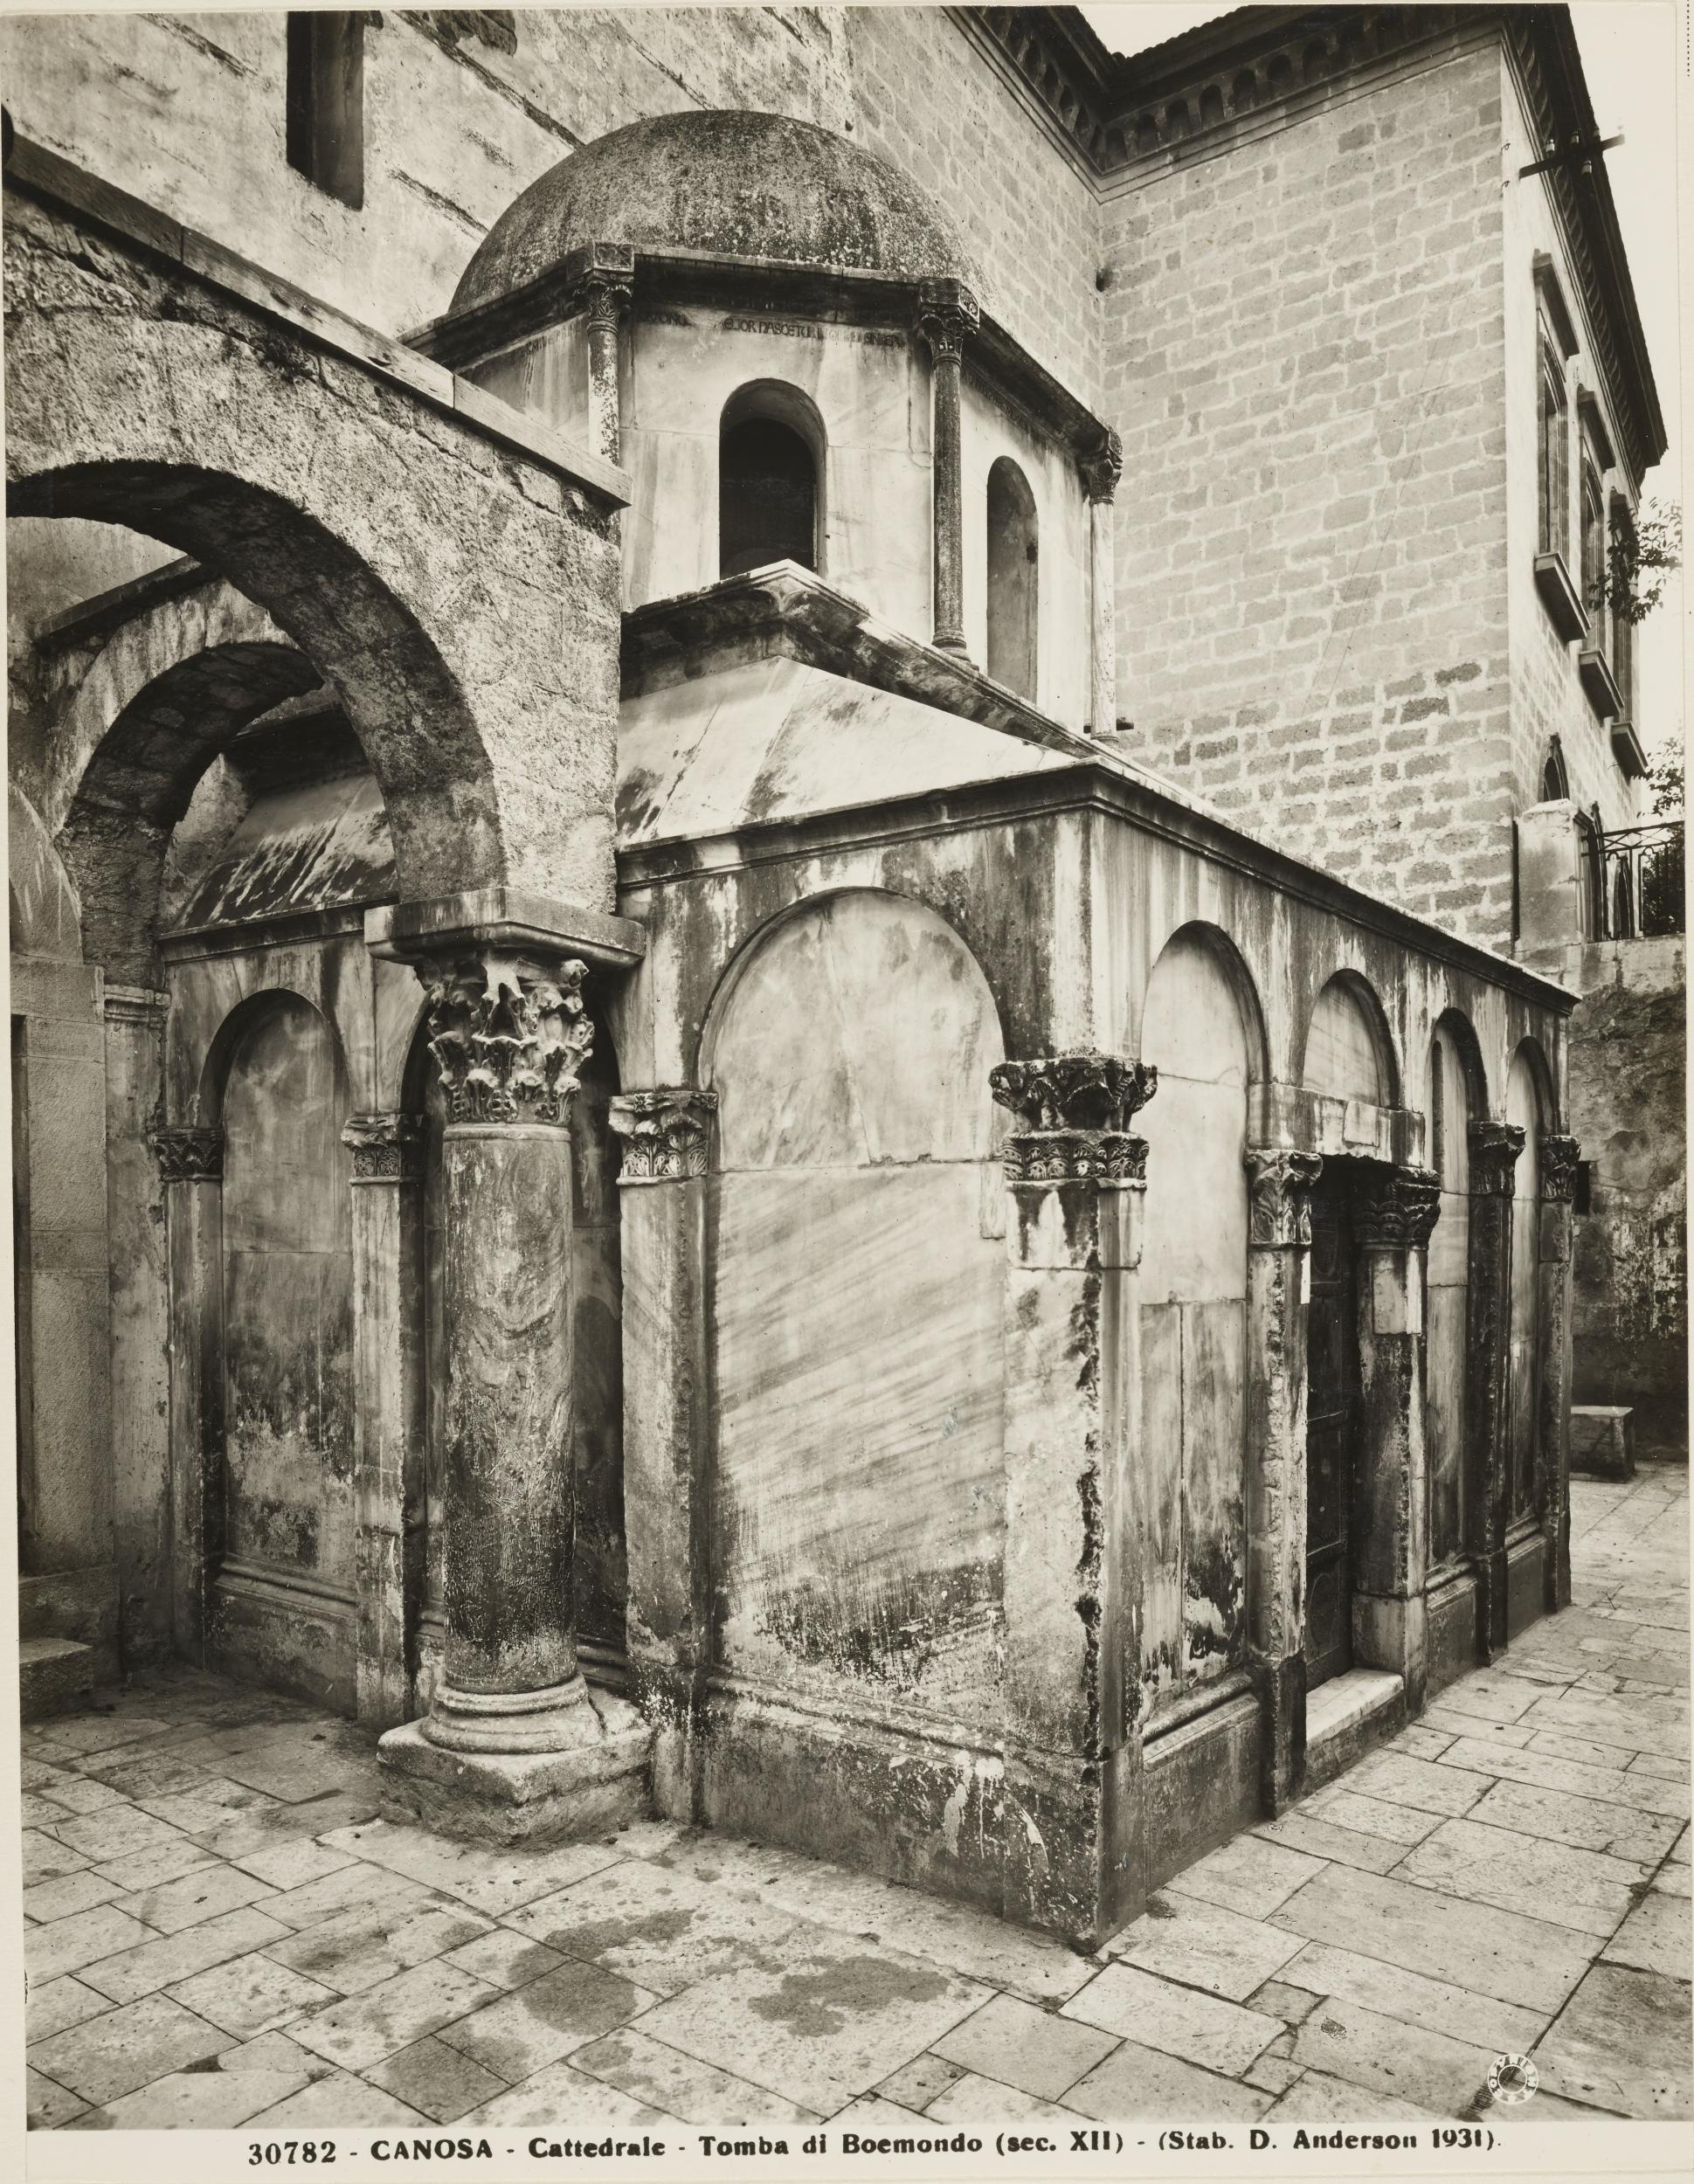 Domenico Anderson, Canosa di Puglia - Chiesa di S. Sabino, tomba di Boemondo, 1931, gelatina ai sali d'argento/carta, MPI143593